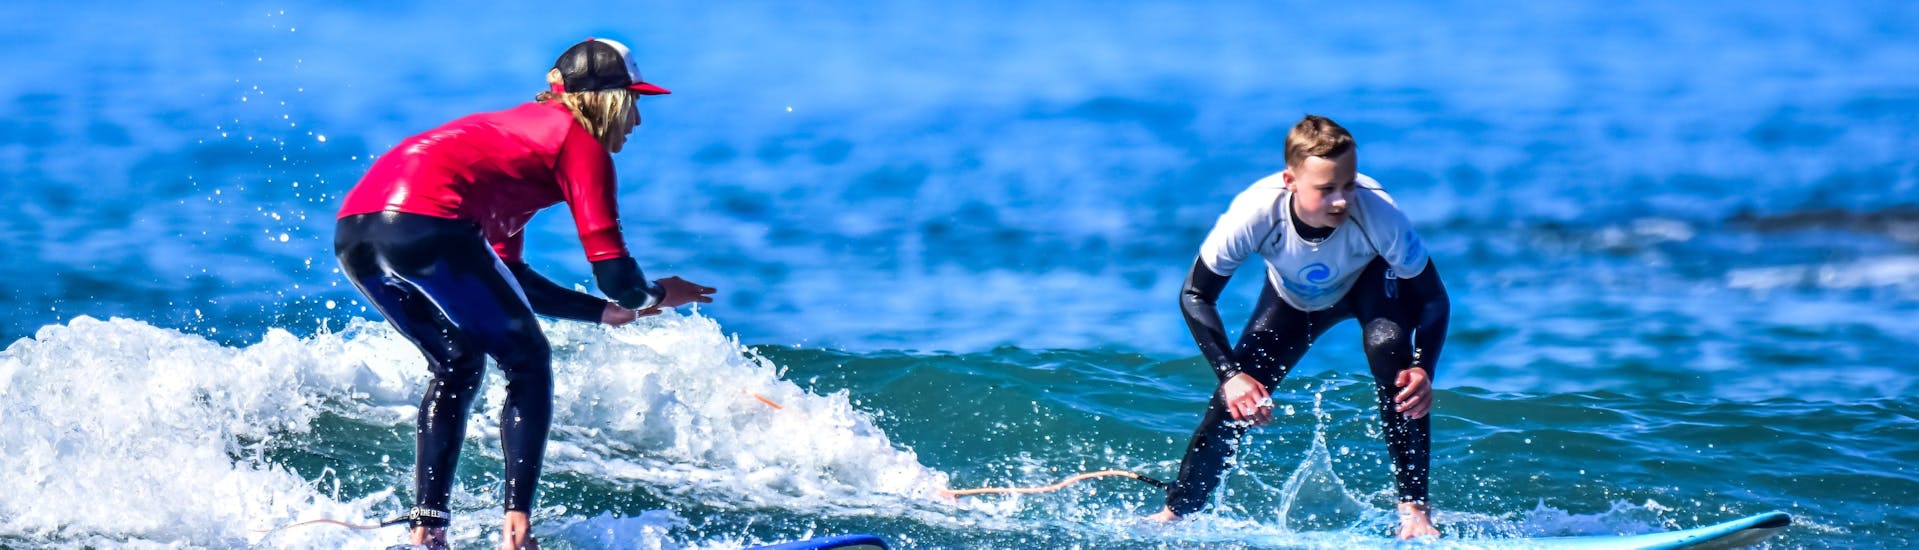 Lezioni di surf da 10 anni per principianti.